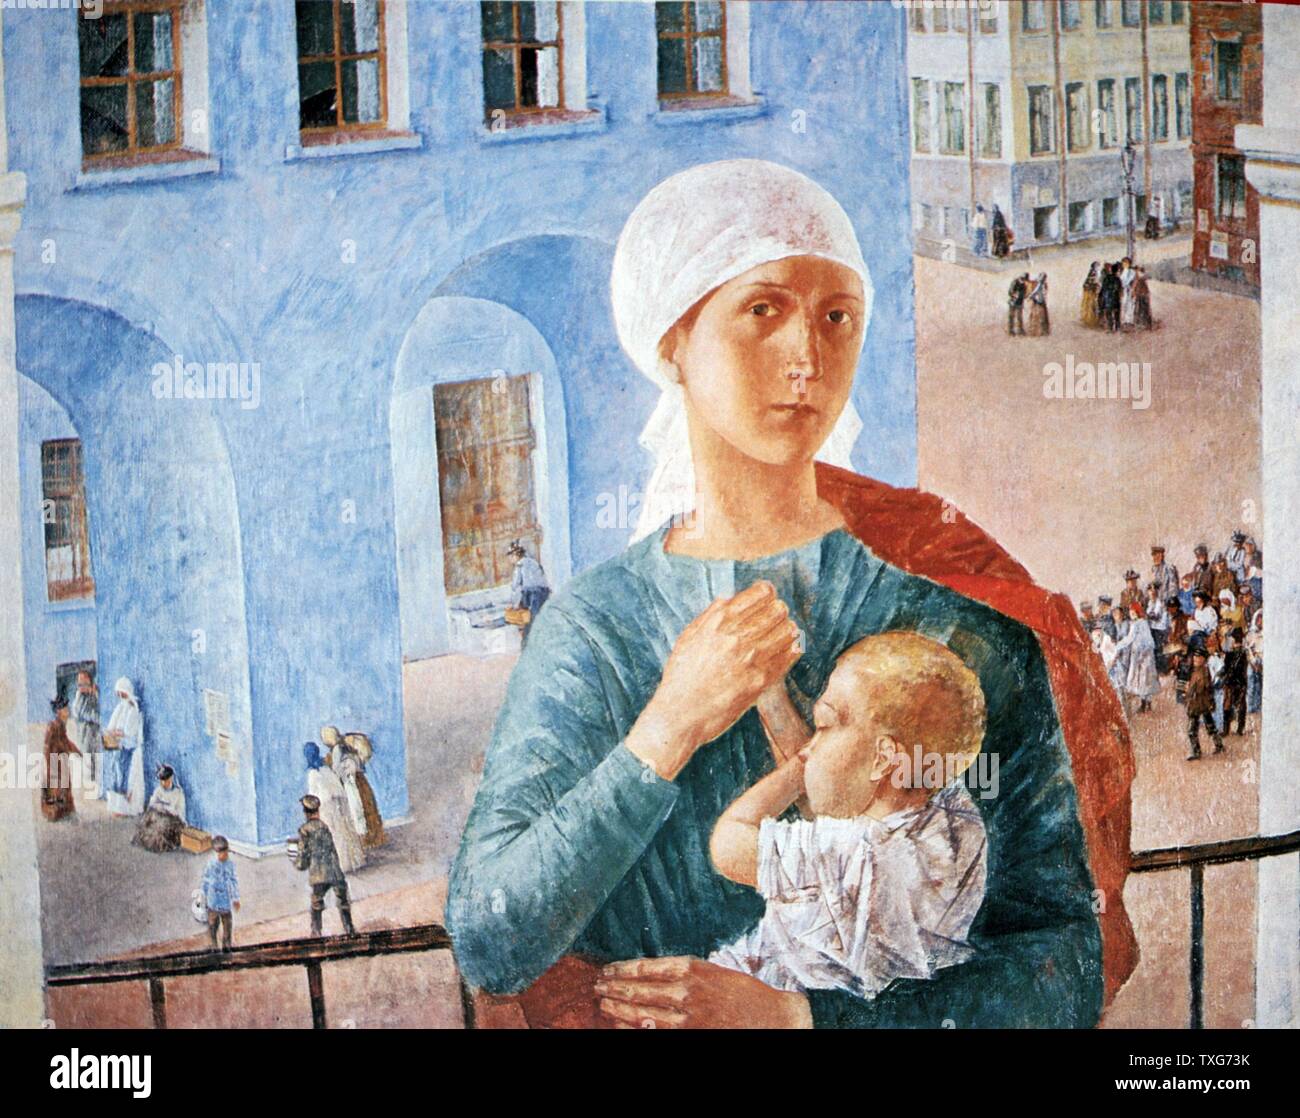 Kuzma Petrov-Vodkin scuola russa del 1918 a Petrograd - giovane madre sul balcone abbraccia il suo bambino. Nella strada sotto di persone andare circa le loro attività Olio su tela Foto Stock